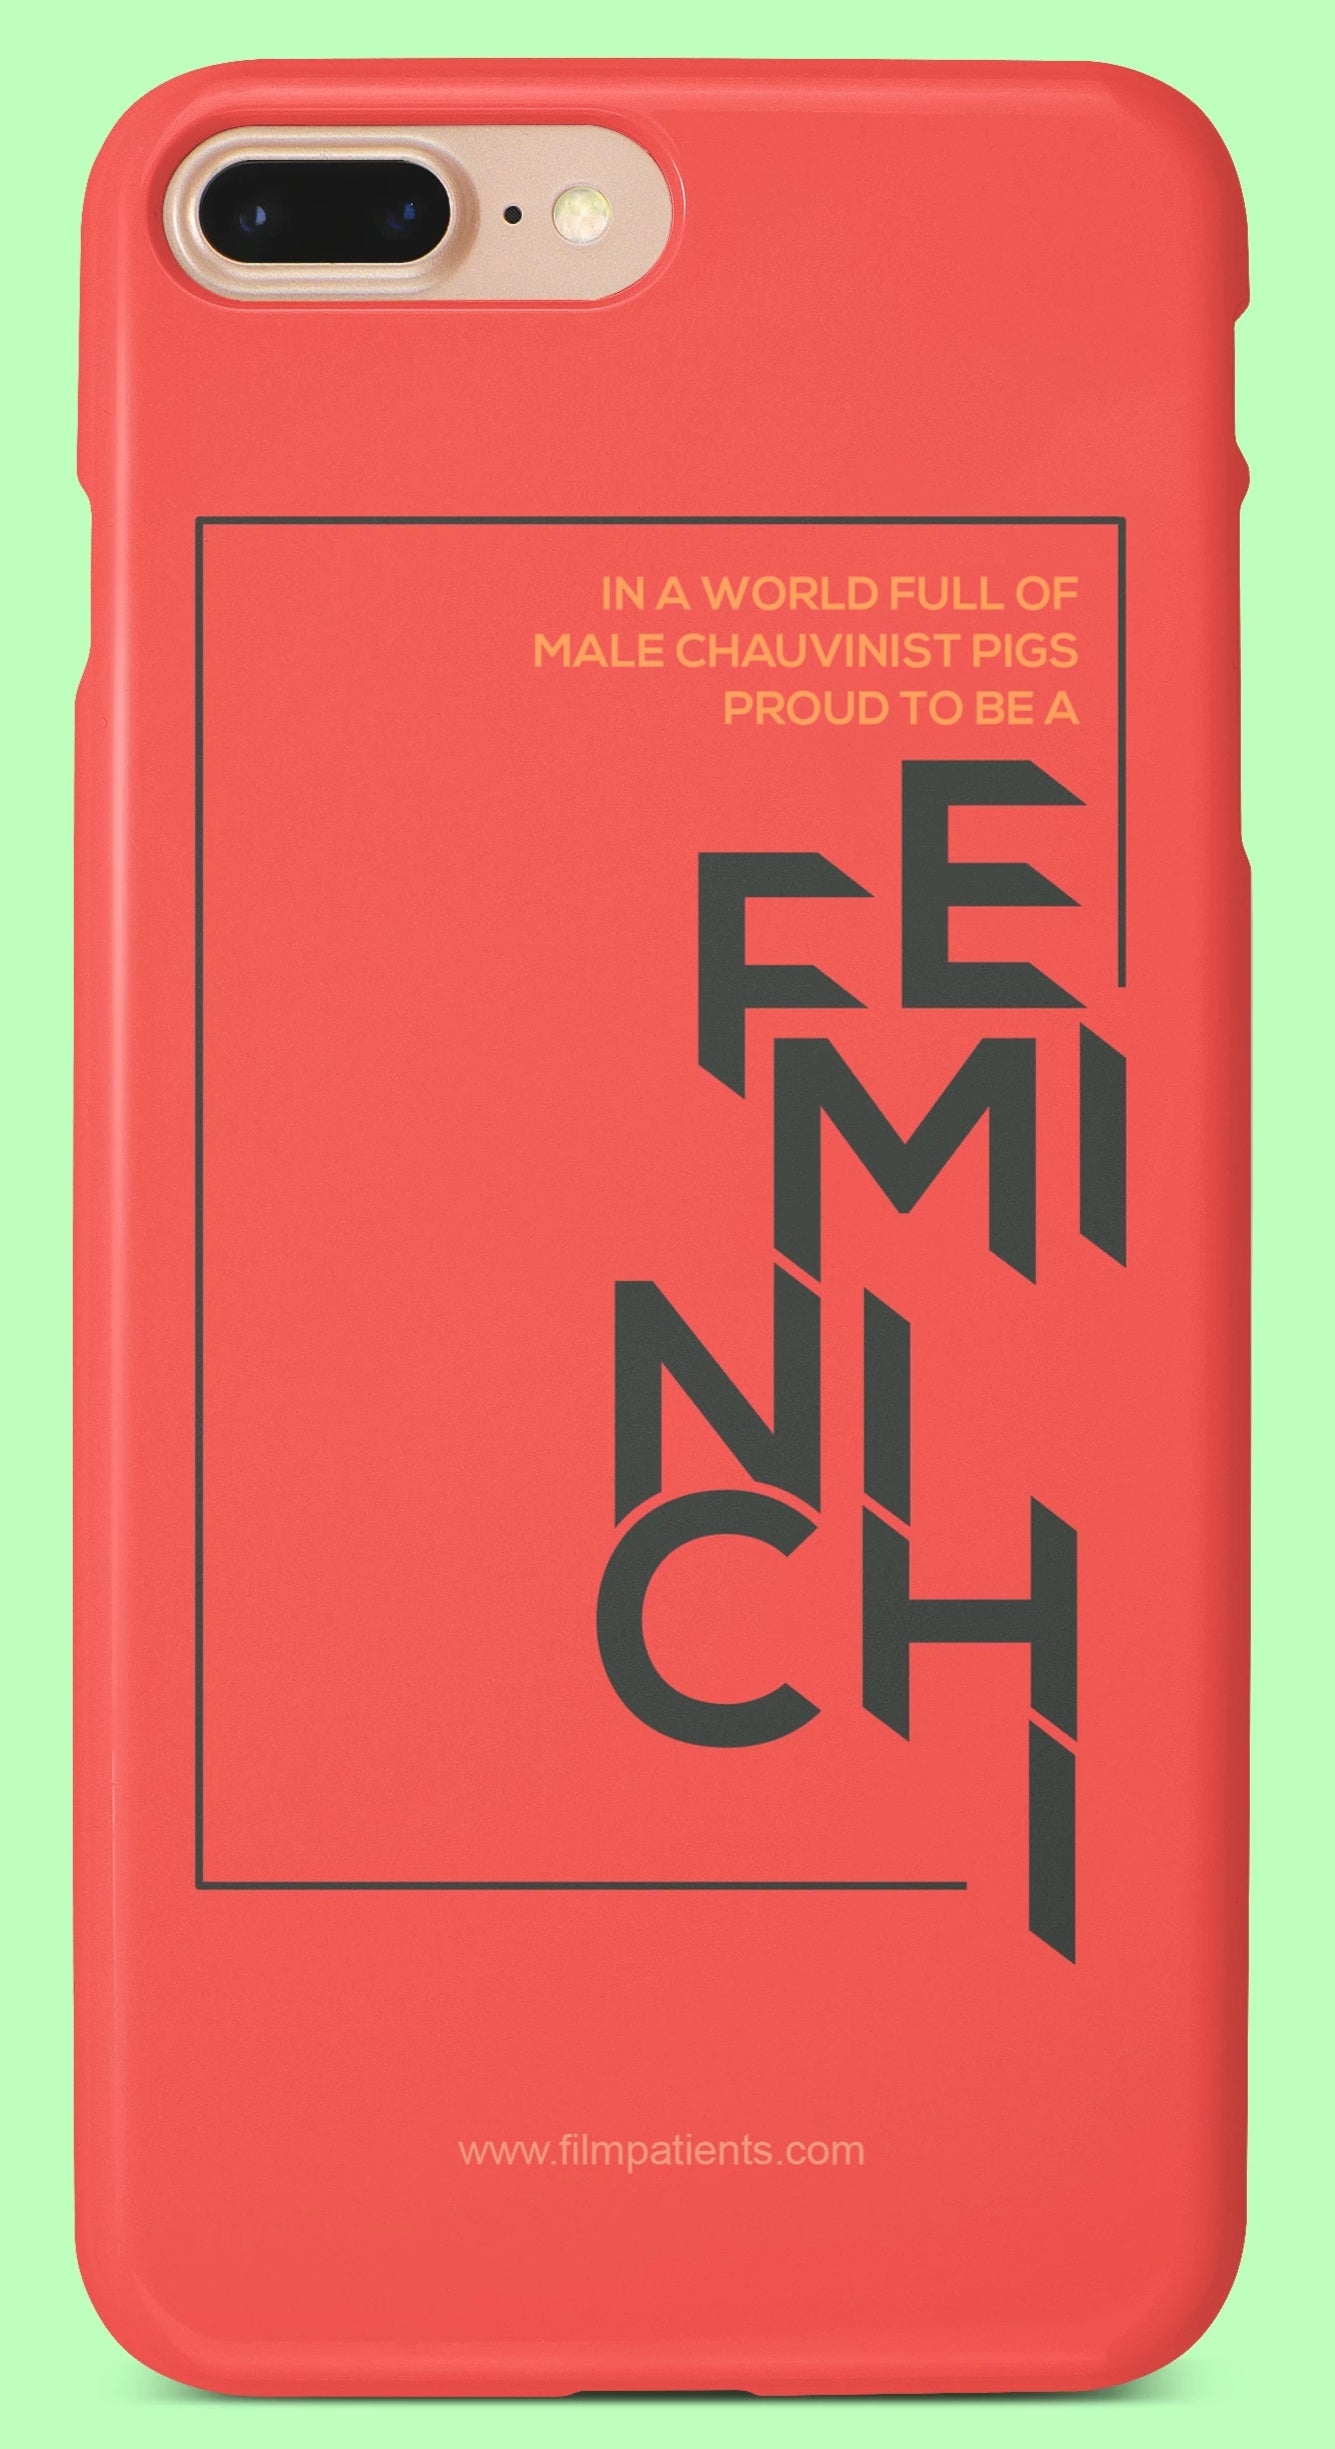 Feminichi Mobile Cover | Film Patients